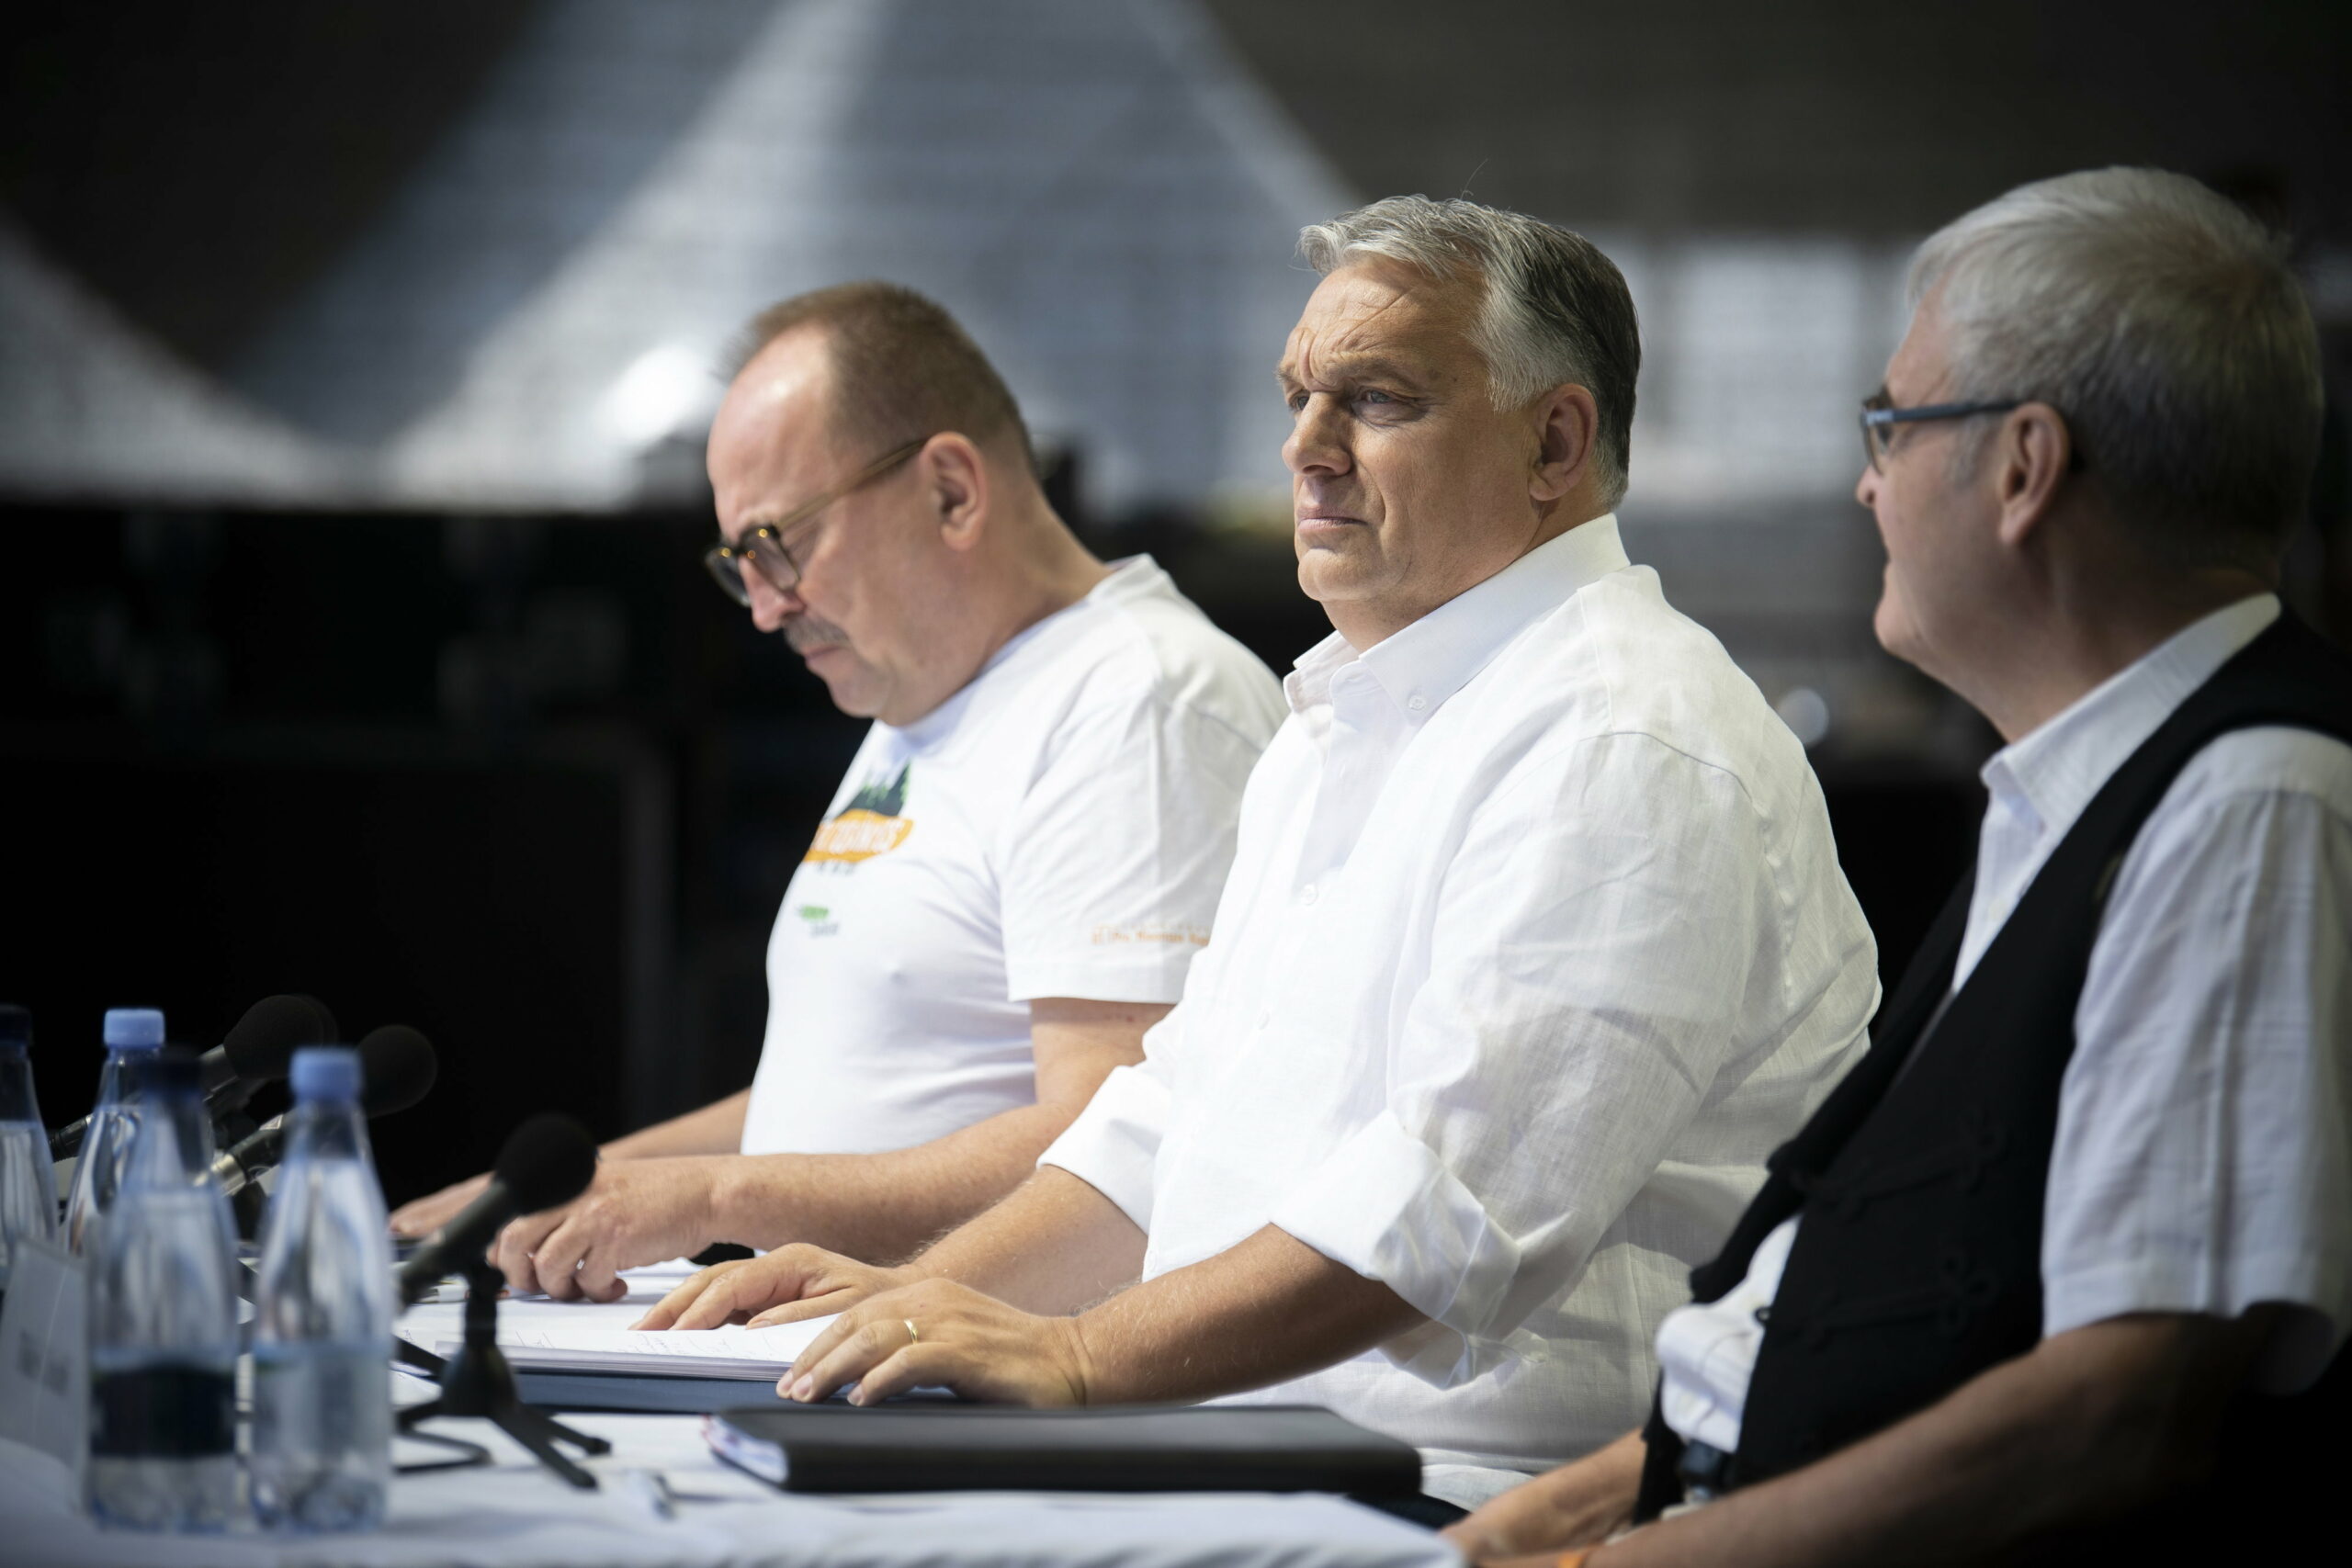 A csendőrség segítségét kérik Orbán Viktor szombati tusnádfürdői beszéde miatt